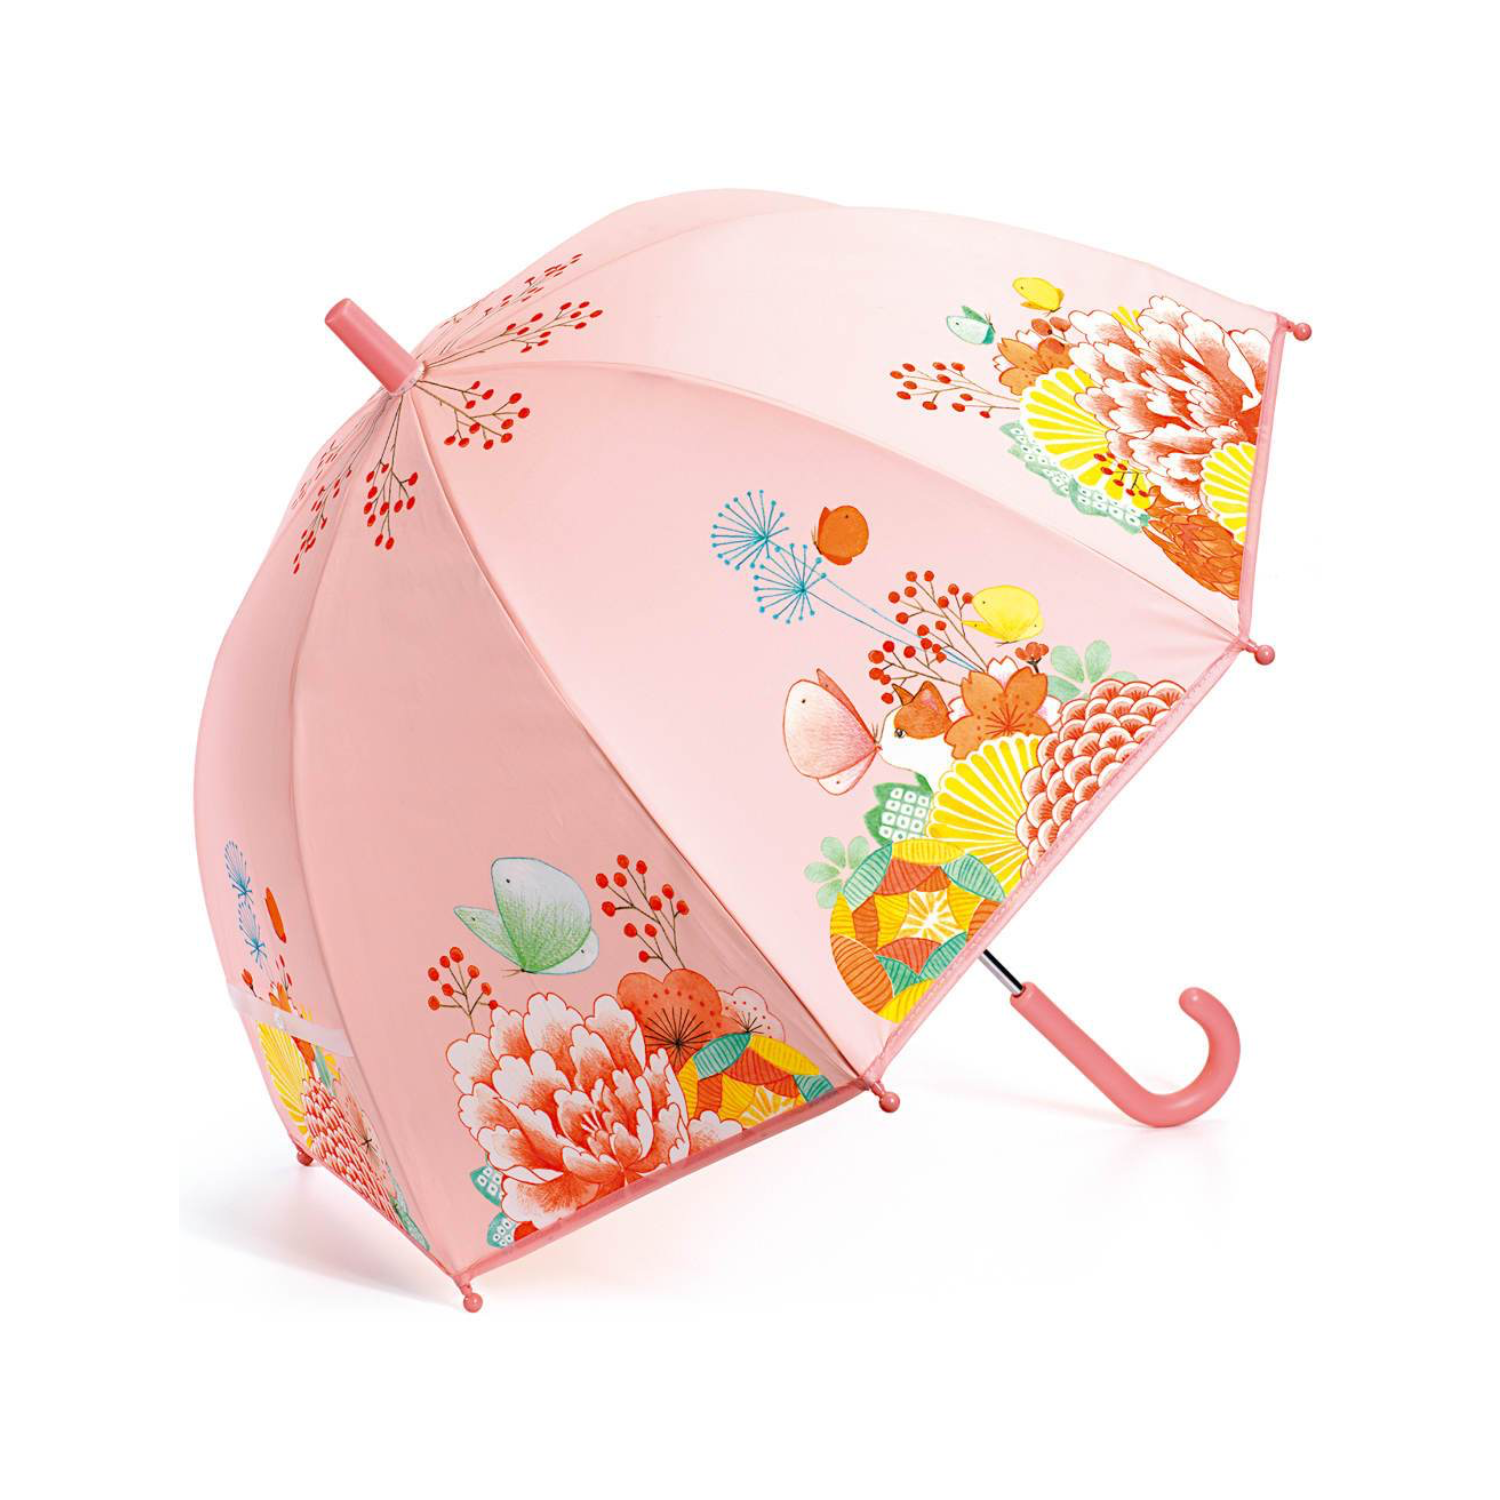 Children's Umbrella / Flower Garden - Ages 4+